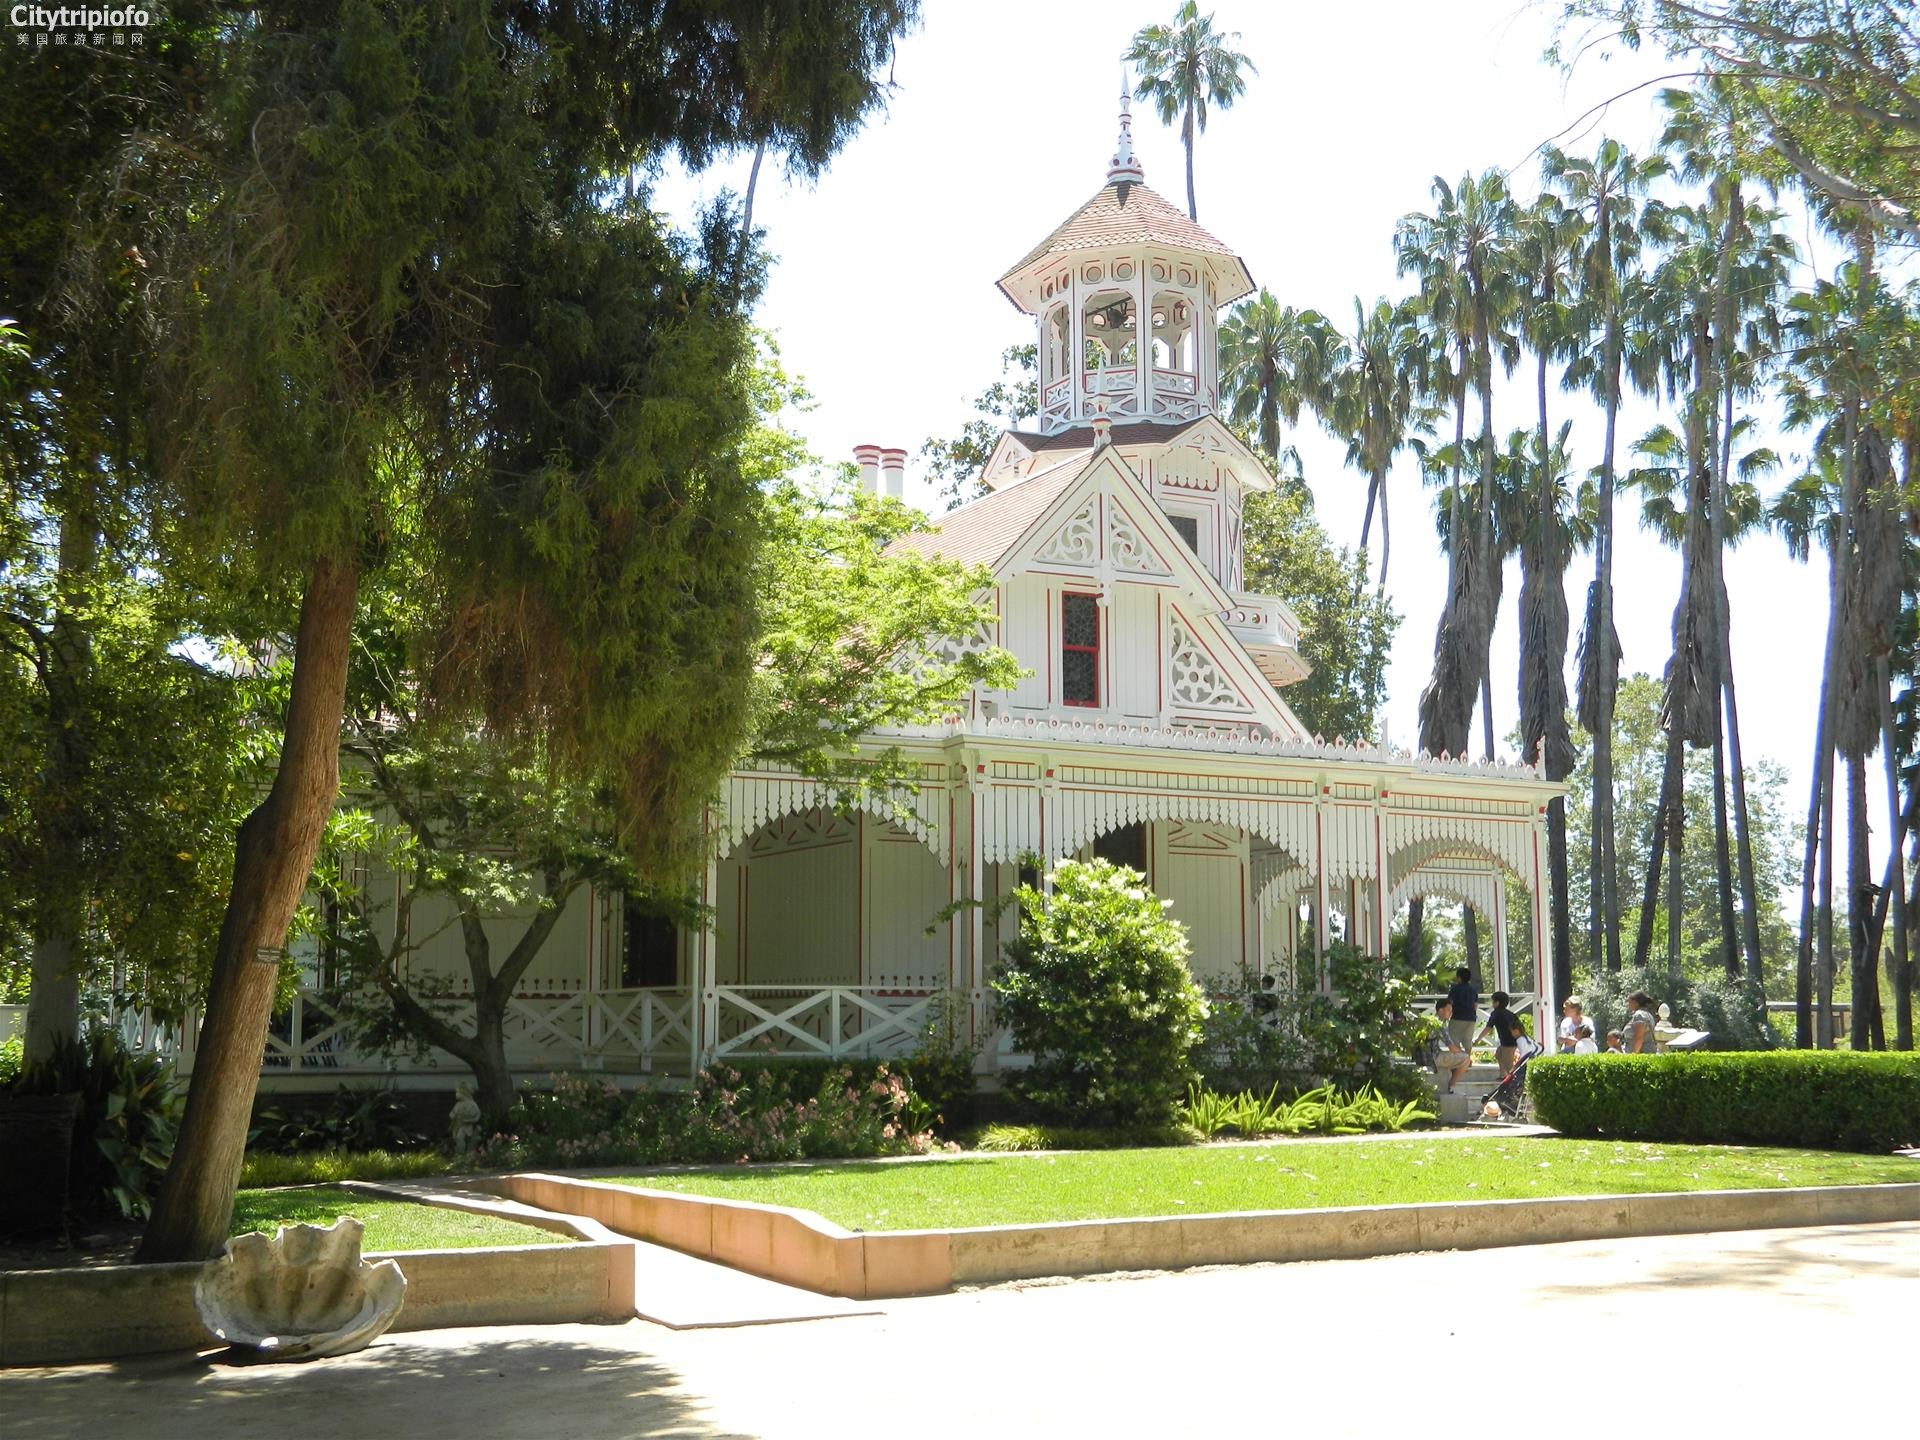 《洛县植物园  L.A. County Arboretum & Botanic Gardens》